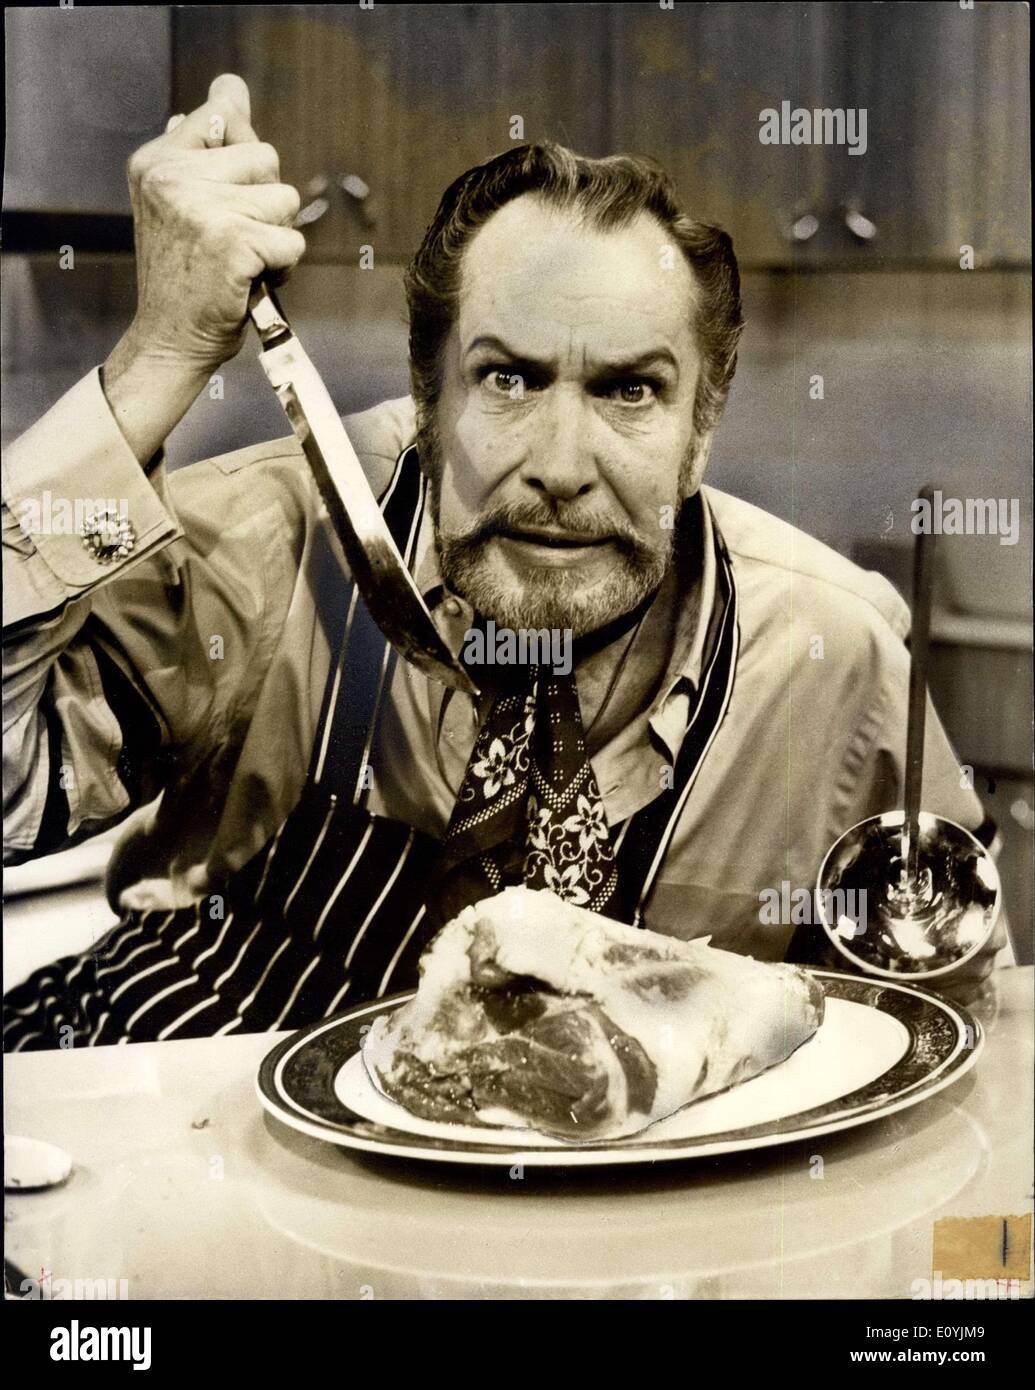 Juillet 13, 1970 - Vincent Price à la star en cuisine série bof thanes television : Film star Vincent Price, ''King'' d'horreur du cinéma américain, est à Londres pour une semaine à l'étoile dans sa propre série de télévision cuisine pour Thames. Price, qui a réalisé plus de 80 films, est également un célèbre chef cuisinier amateur et connaisseur de la bonne nourriture. Il a écrit plusieurs livres sur le sujet mais c'est la première fois qu'il a joué dans une série de cuisine. La série est prévue pour la transmission de la nouvelle année Banque D'Images